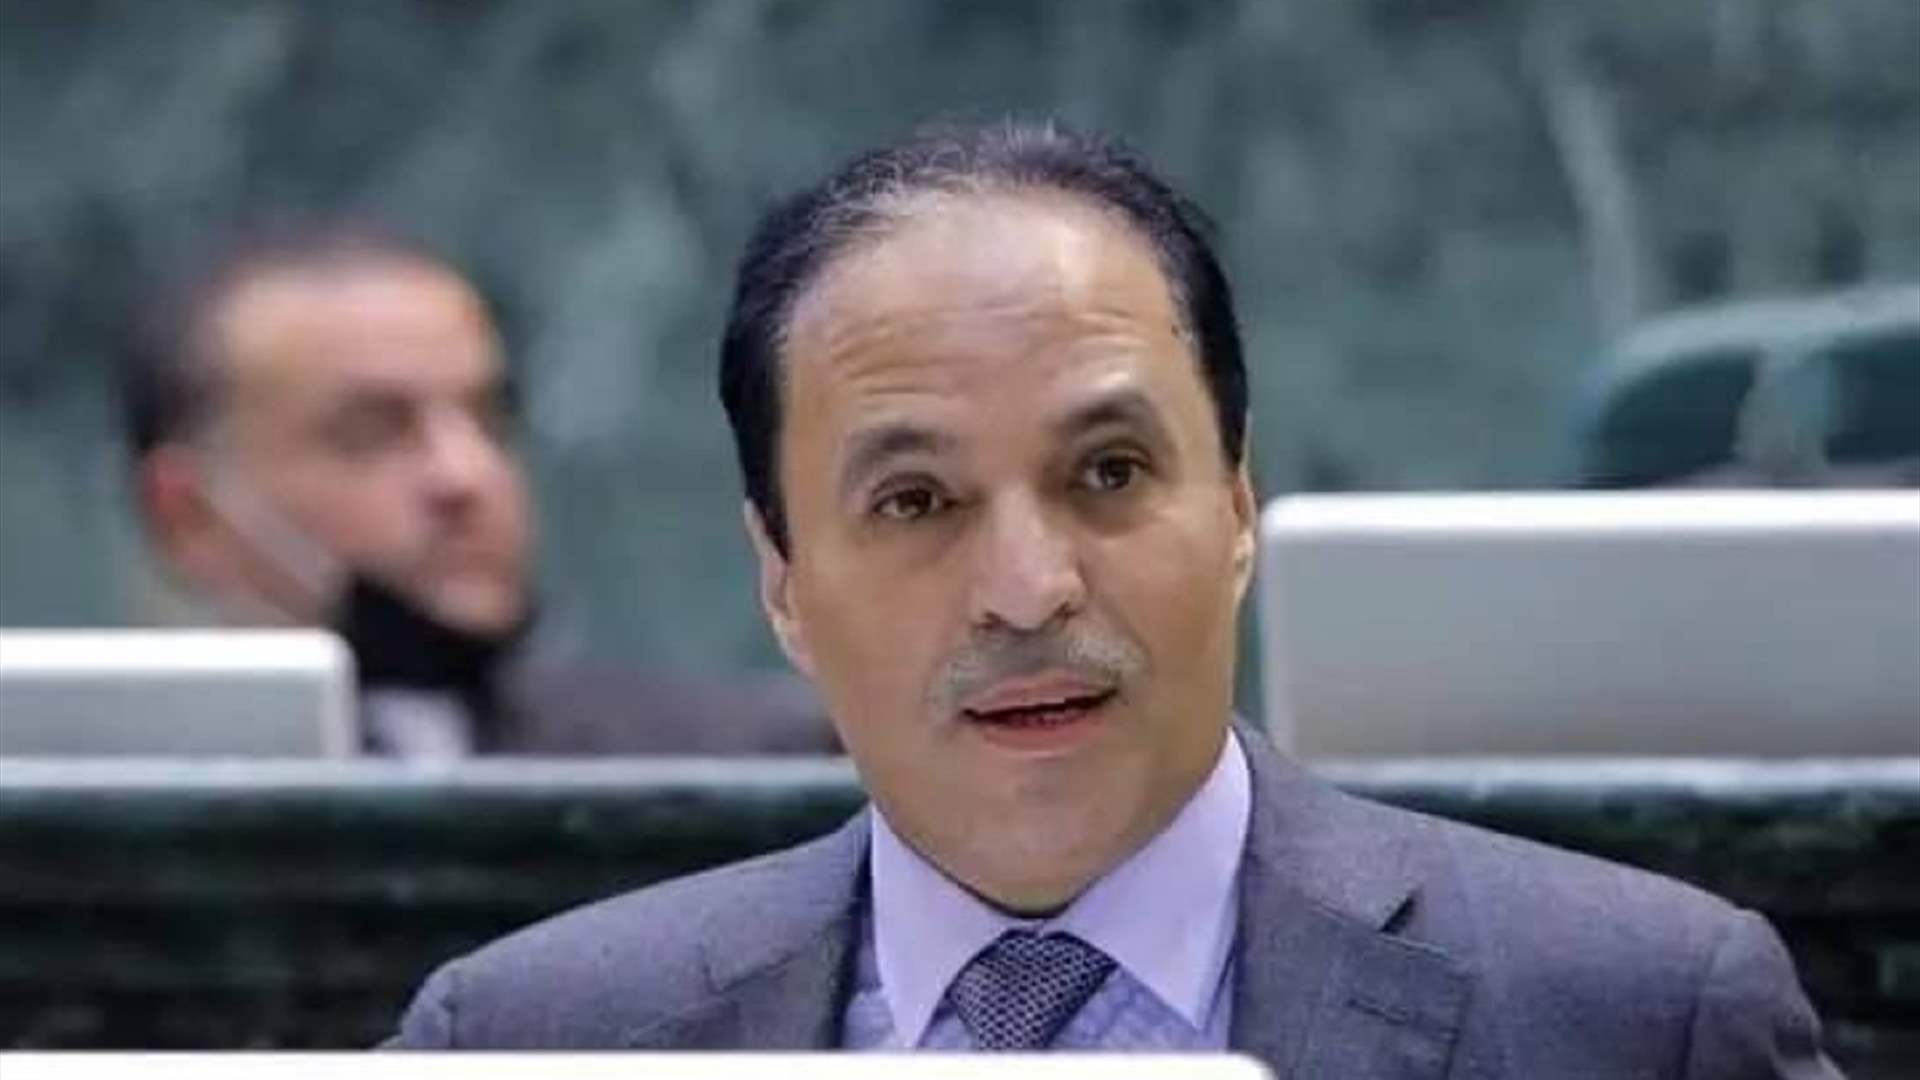 فصل نائب أردني من البرلمان بعد مناشدته ولي عهد السعودية عدم منح مساعدات للمملكة